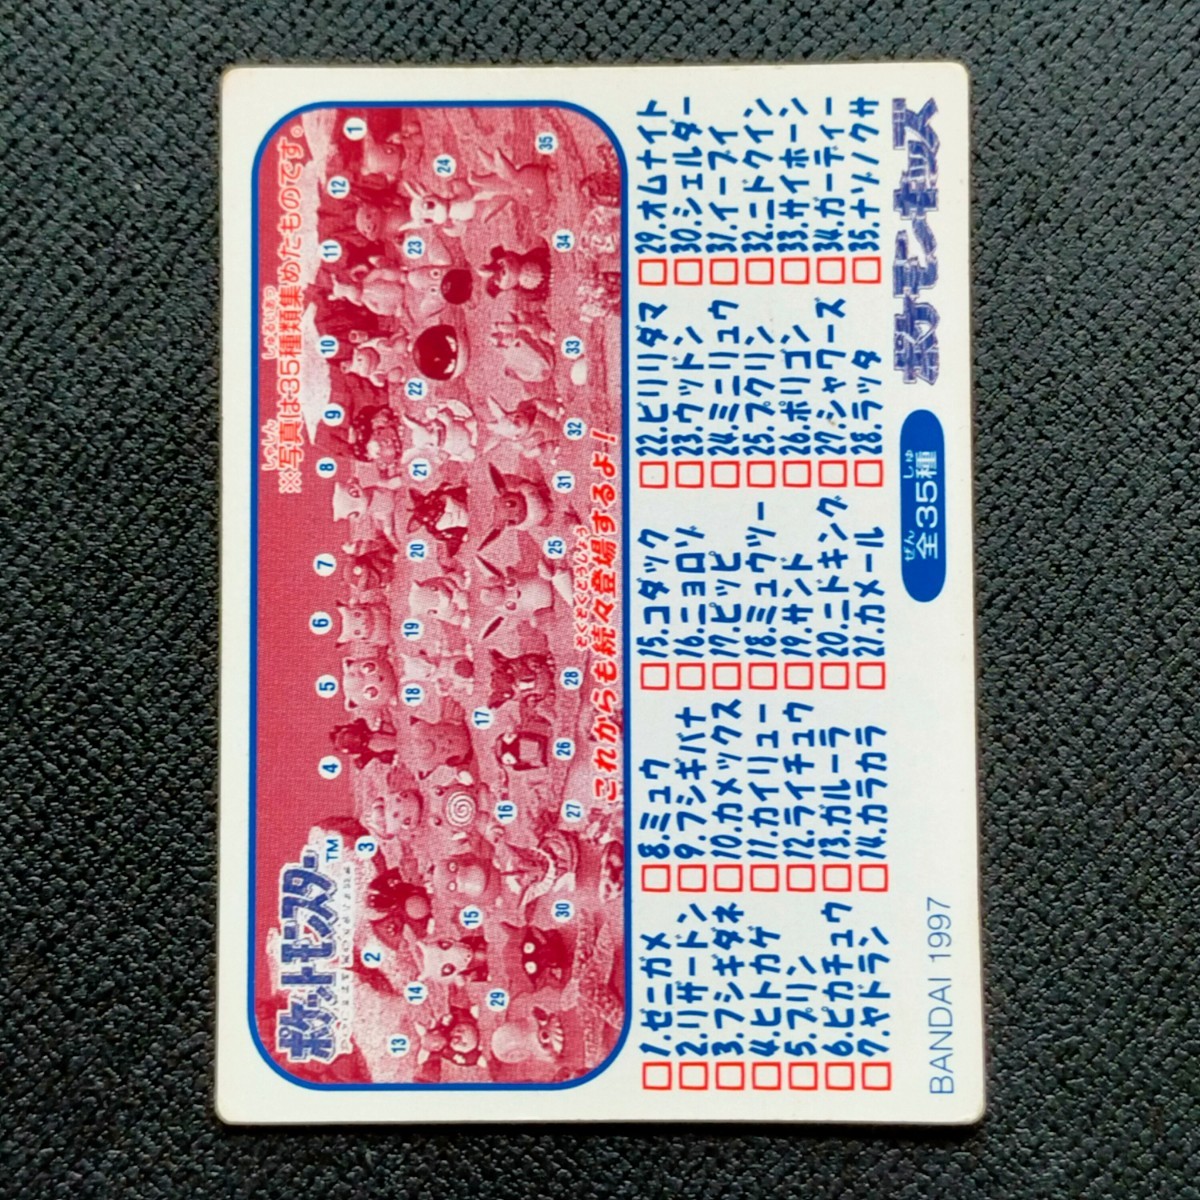 1995年初期 キングラー ポケモン キッズ カード Nintendo 「ゼニガメ リザードン フシギダネ ヒトカゲ ピカチュウ ヤドラン ミュウ」_画像4